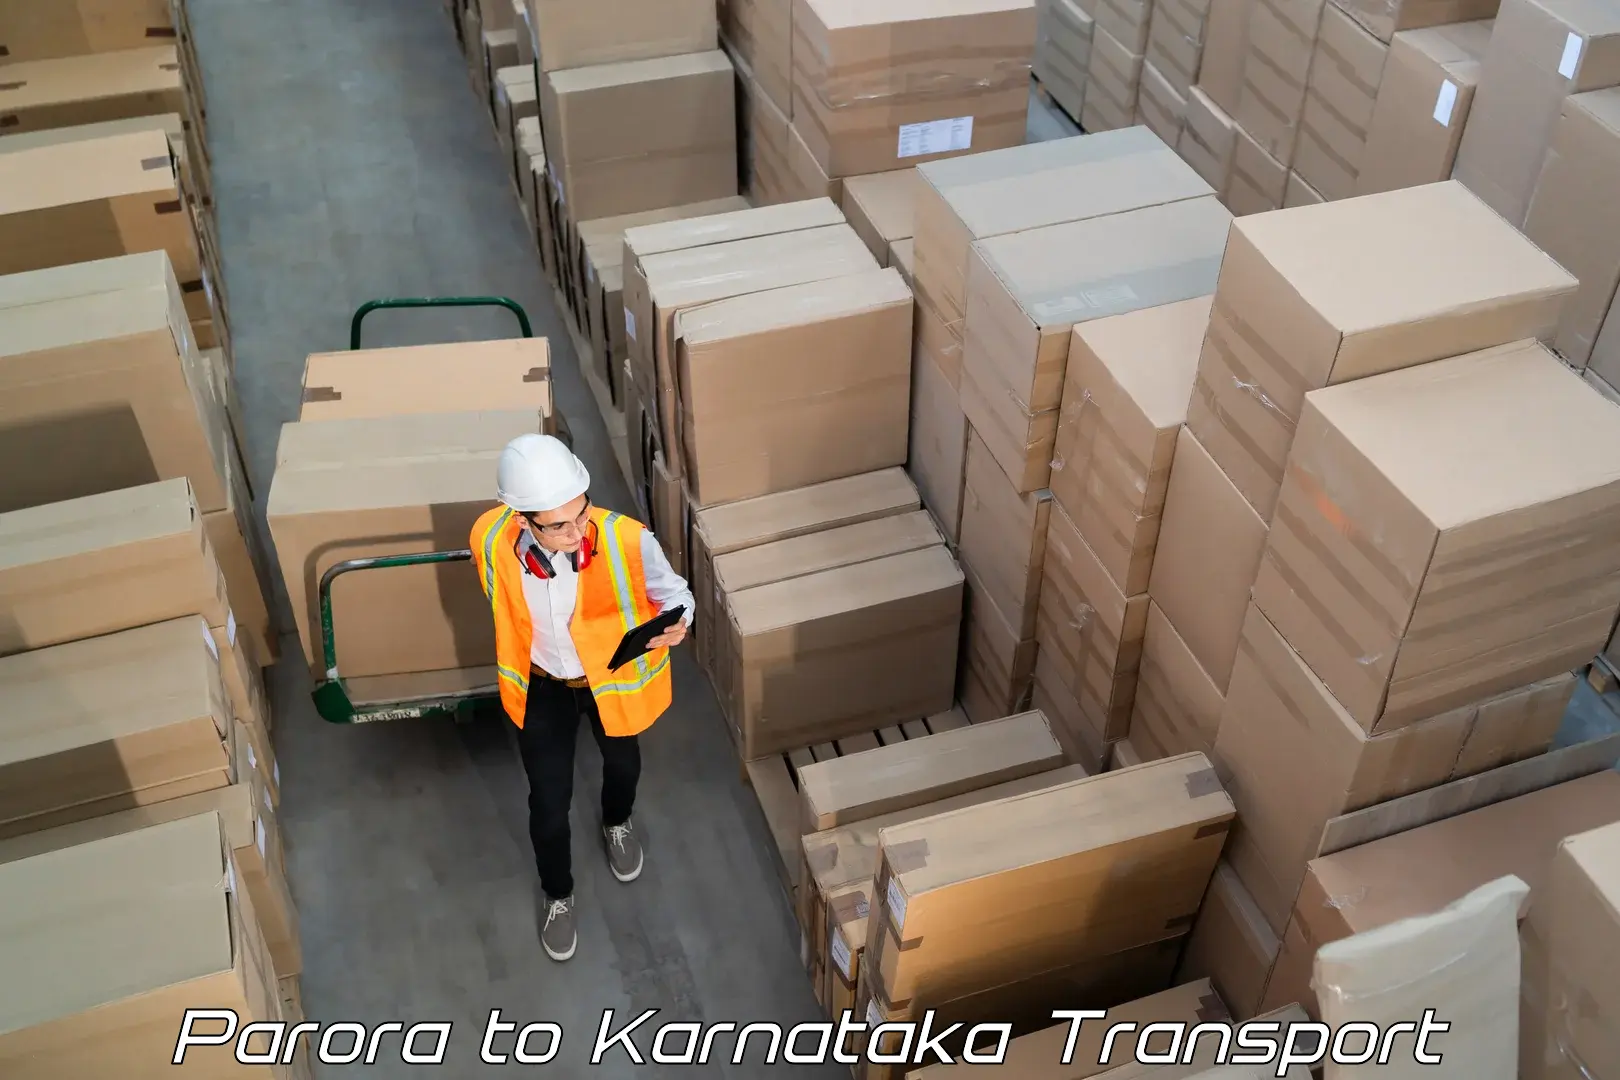 Part load transport service in India Parora to Manvi